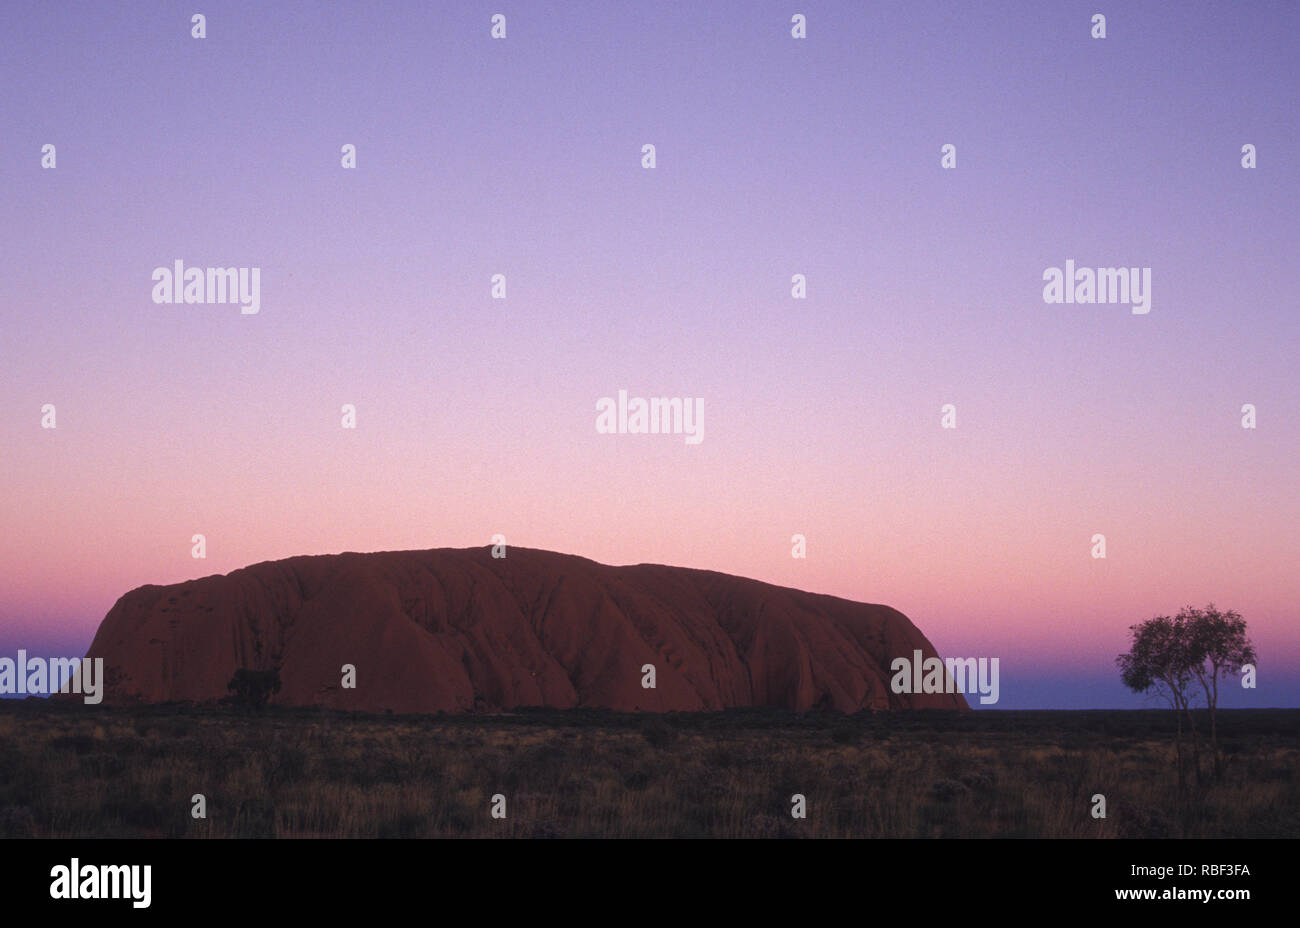 Uluru auch bekannt als Ayers Rock und offiziell als "Uluru/Ayers Rock" ist eine große Felsformation aus Sandstein im südlichen Teil des NT gazetted. Stockfoto